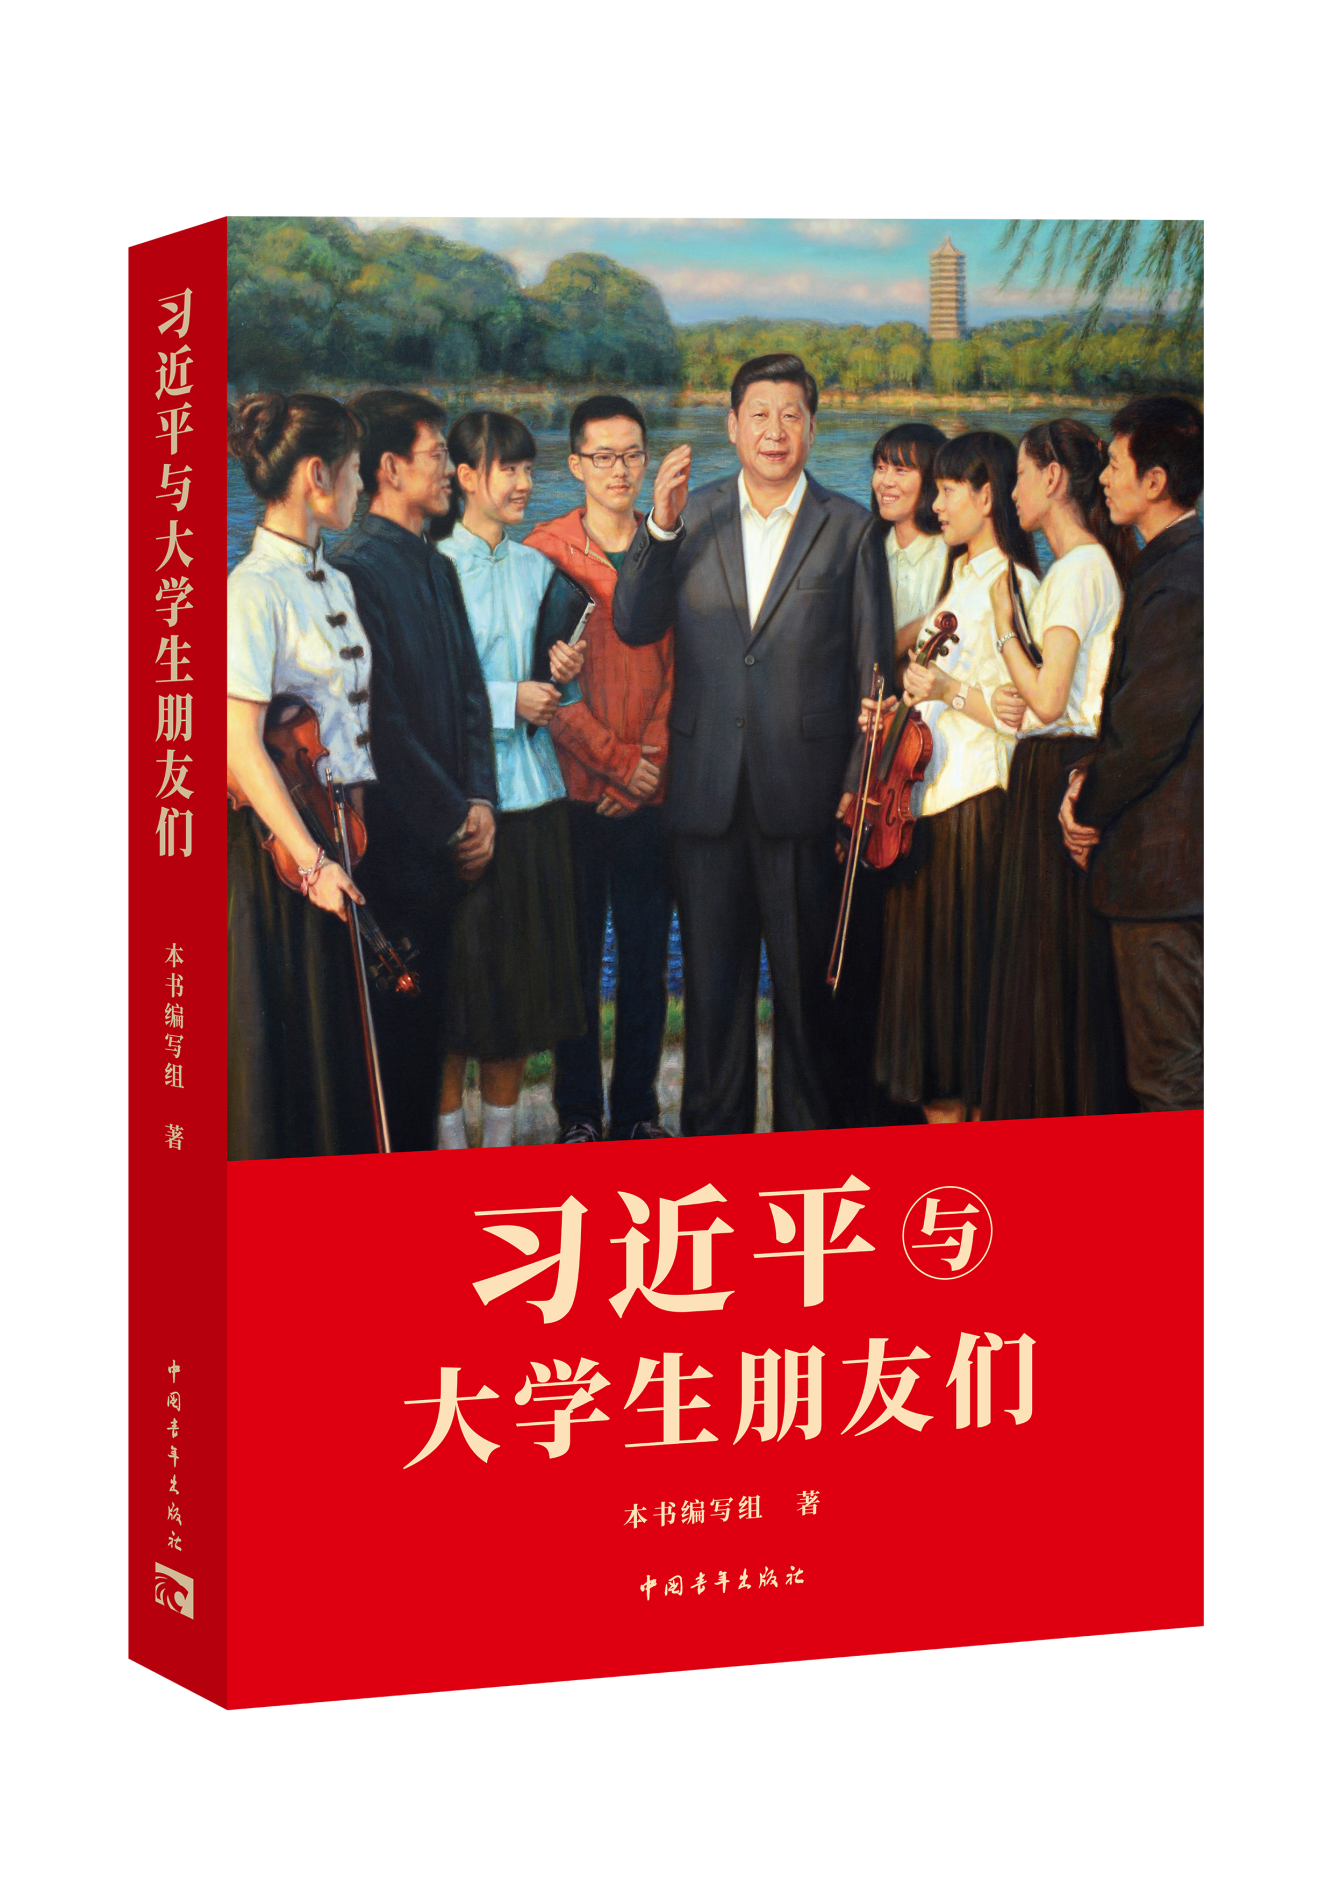 青春心向党，书香伴成长——《习近平与大学生朋友们》图书捐赠仪式在京顺利举行